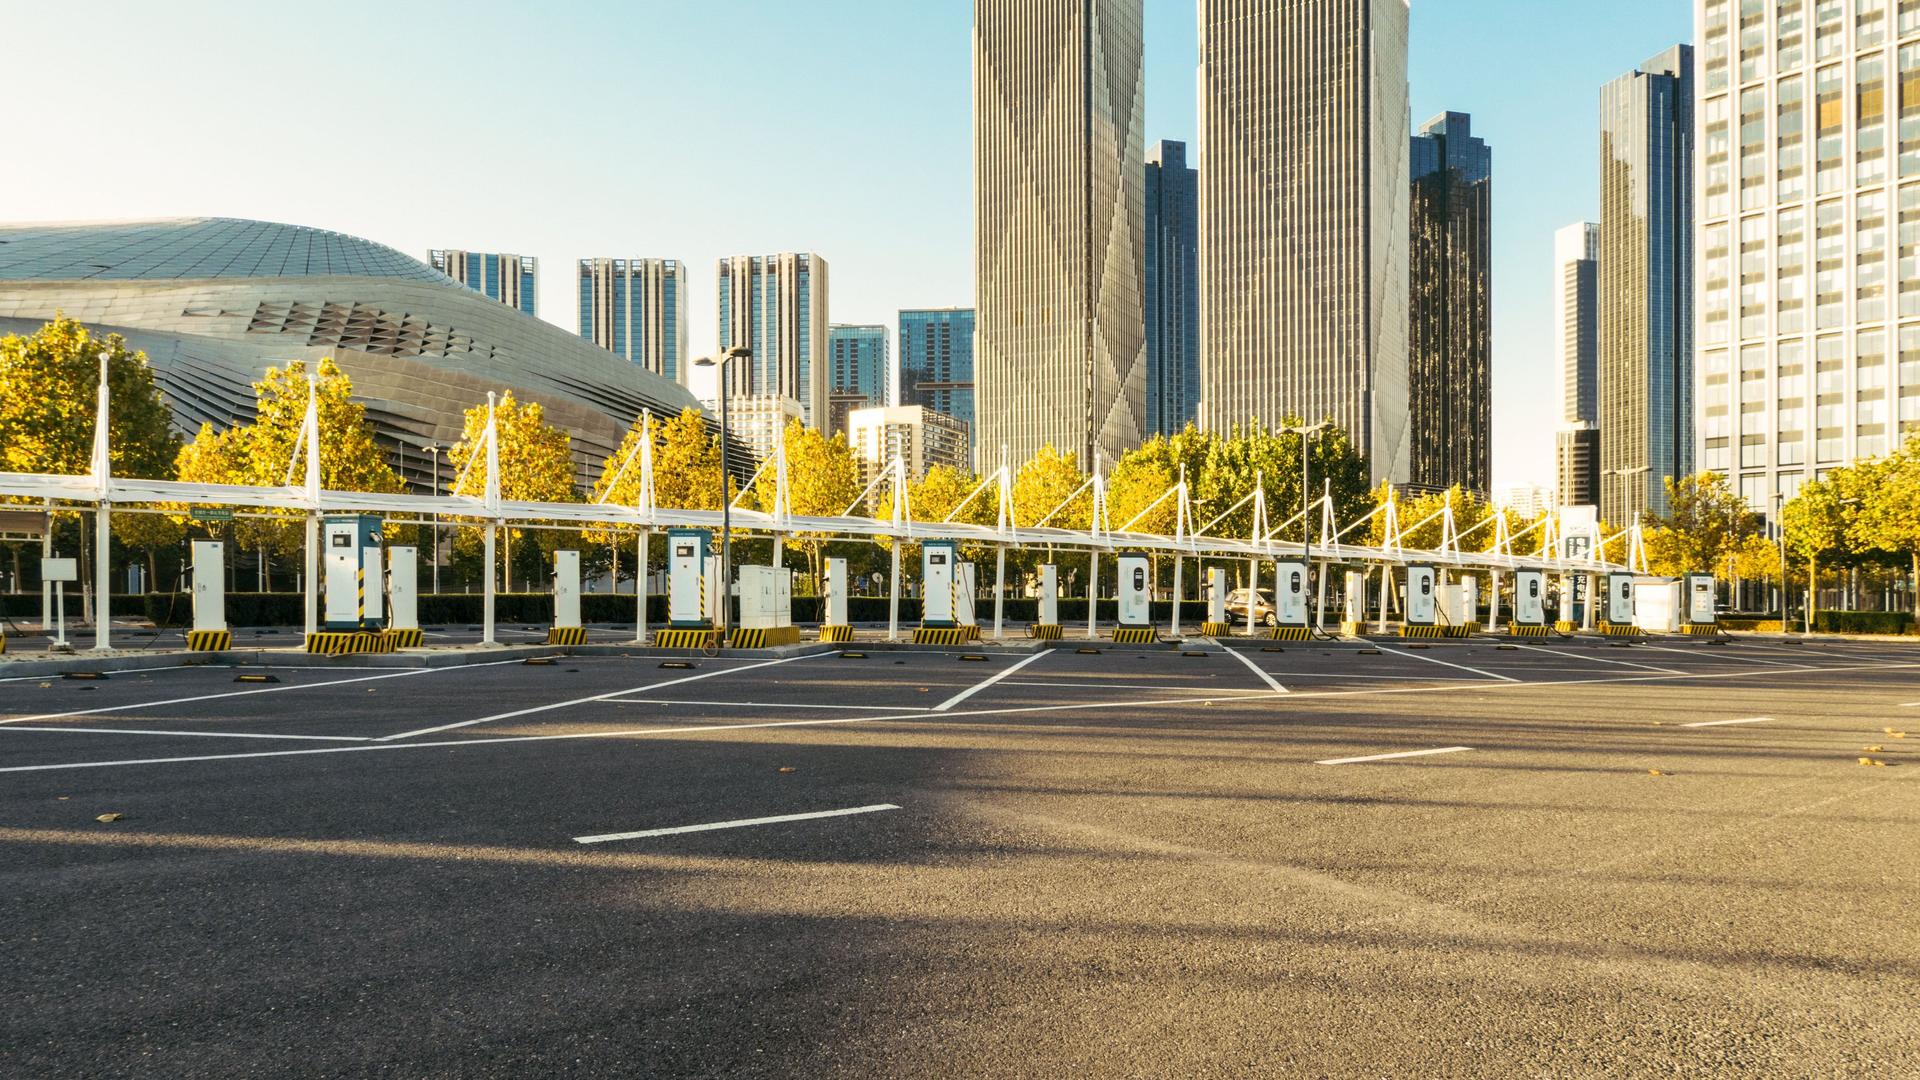 Ein großer leerer Parkplatz mit Aufladestationen für Elektroautos. Im Hintergrund Hochhäuser im Sonnenschein.